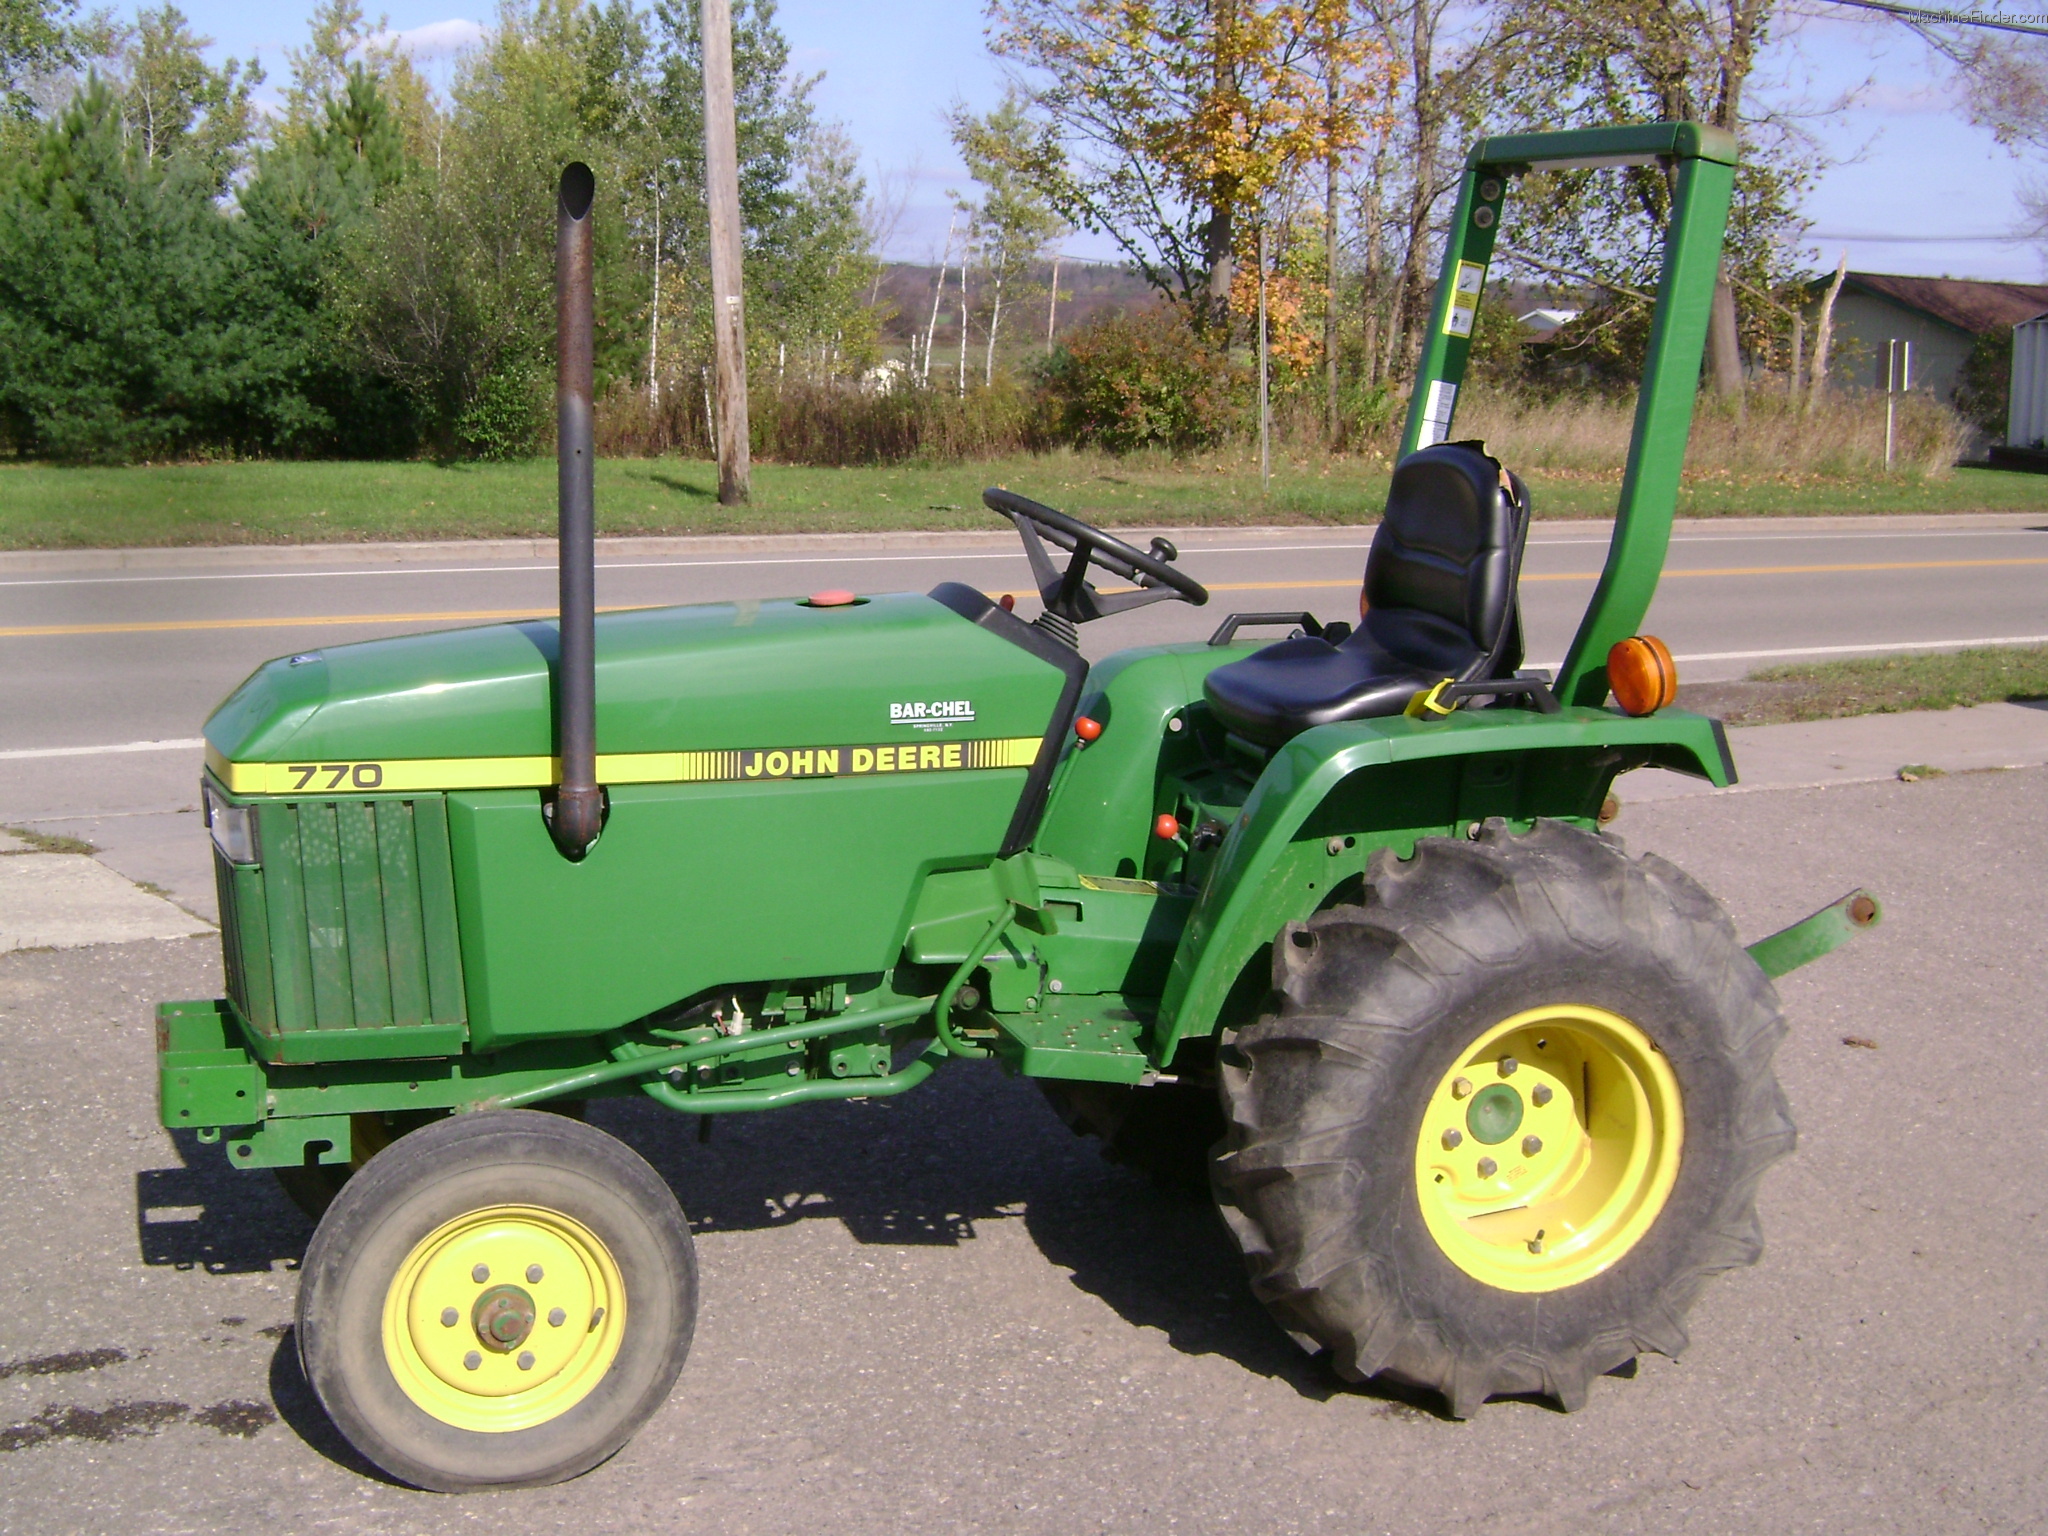 1994 John Deere 770 Tractors - Compact (1-40hp.) - John Deere ...